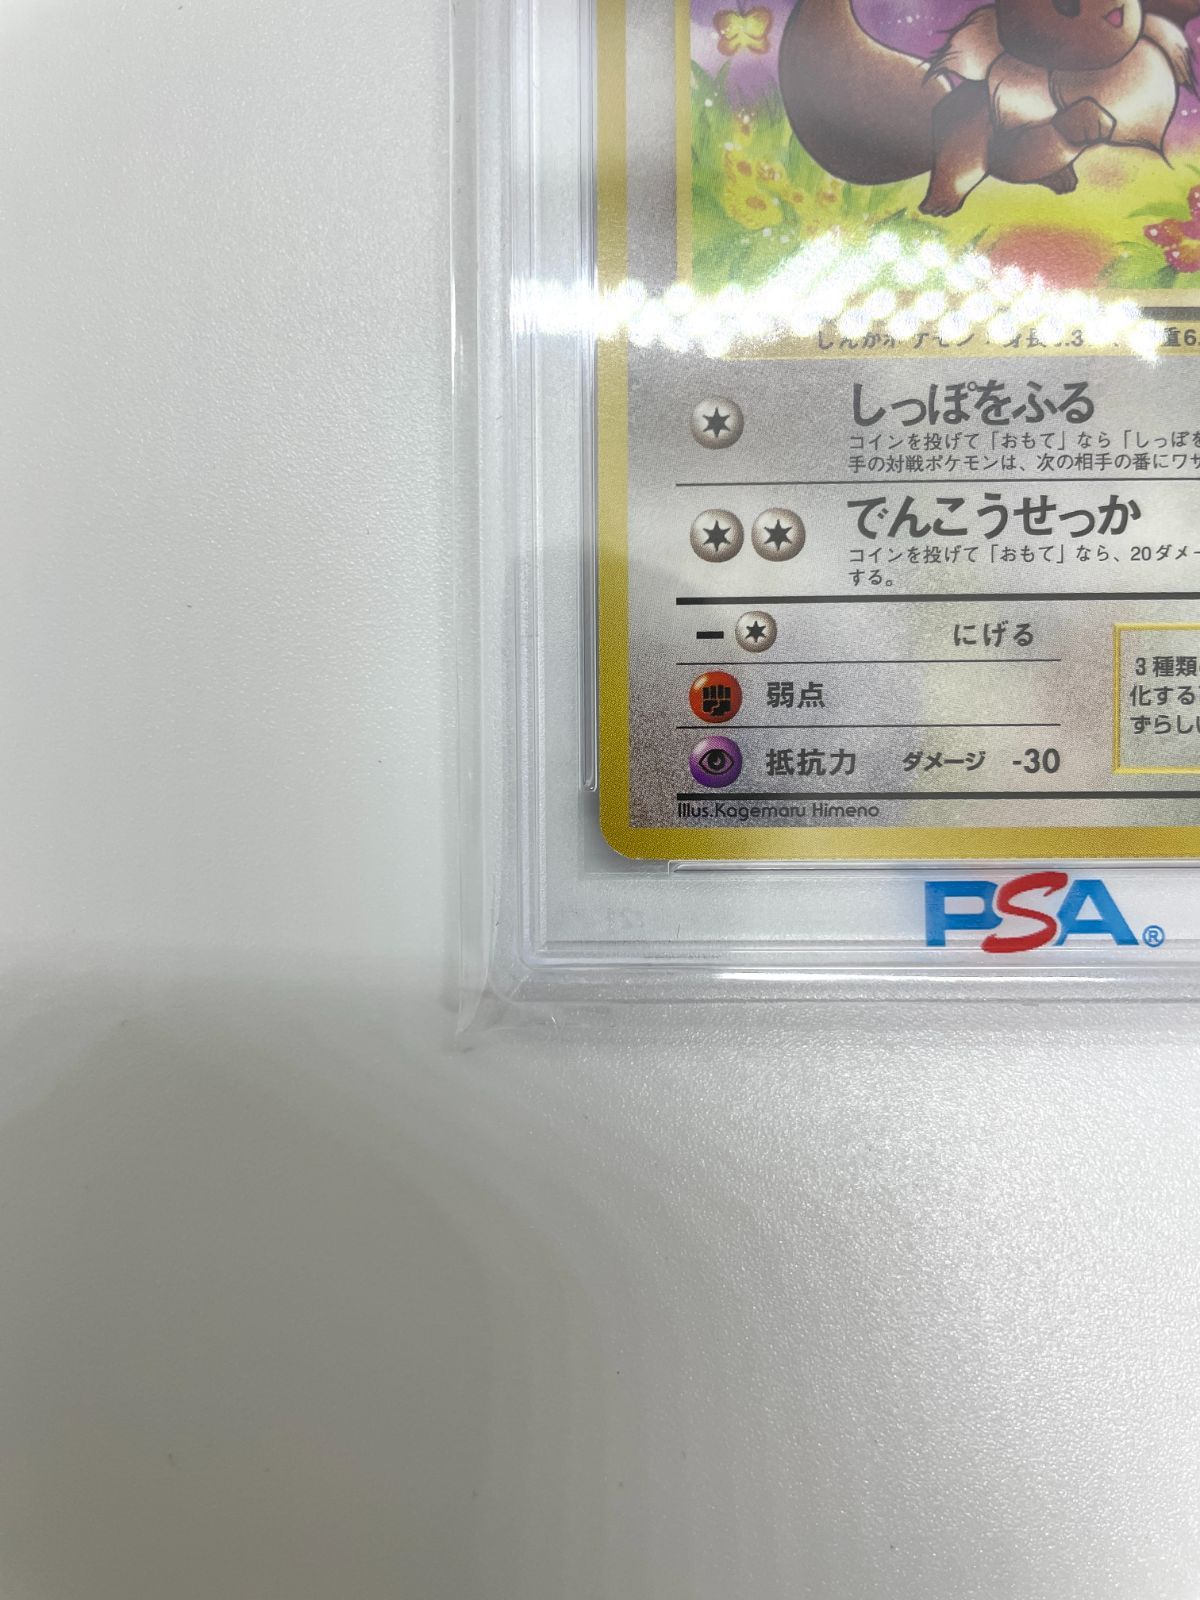 【PSA10】ポケモンカード 旧裏面 イーブイ LV.12 ポケカ 拡張パック第2弾 ポケモンジャングル 1997 初期